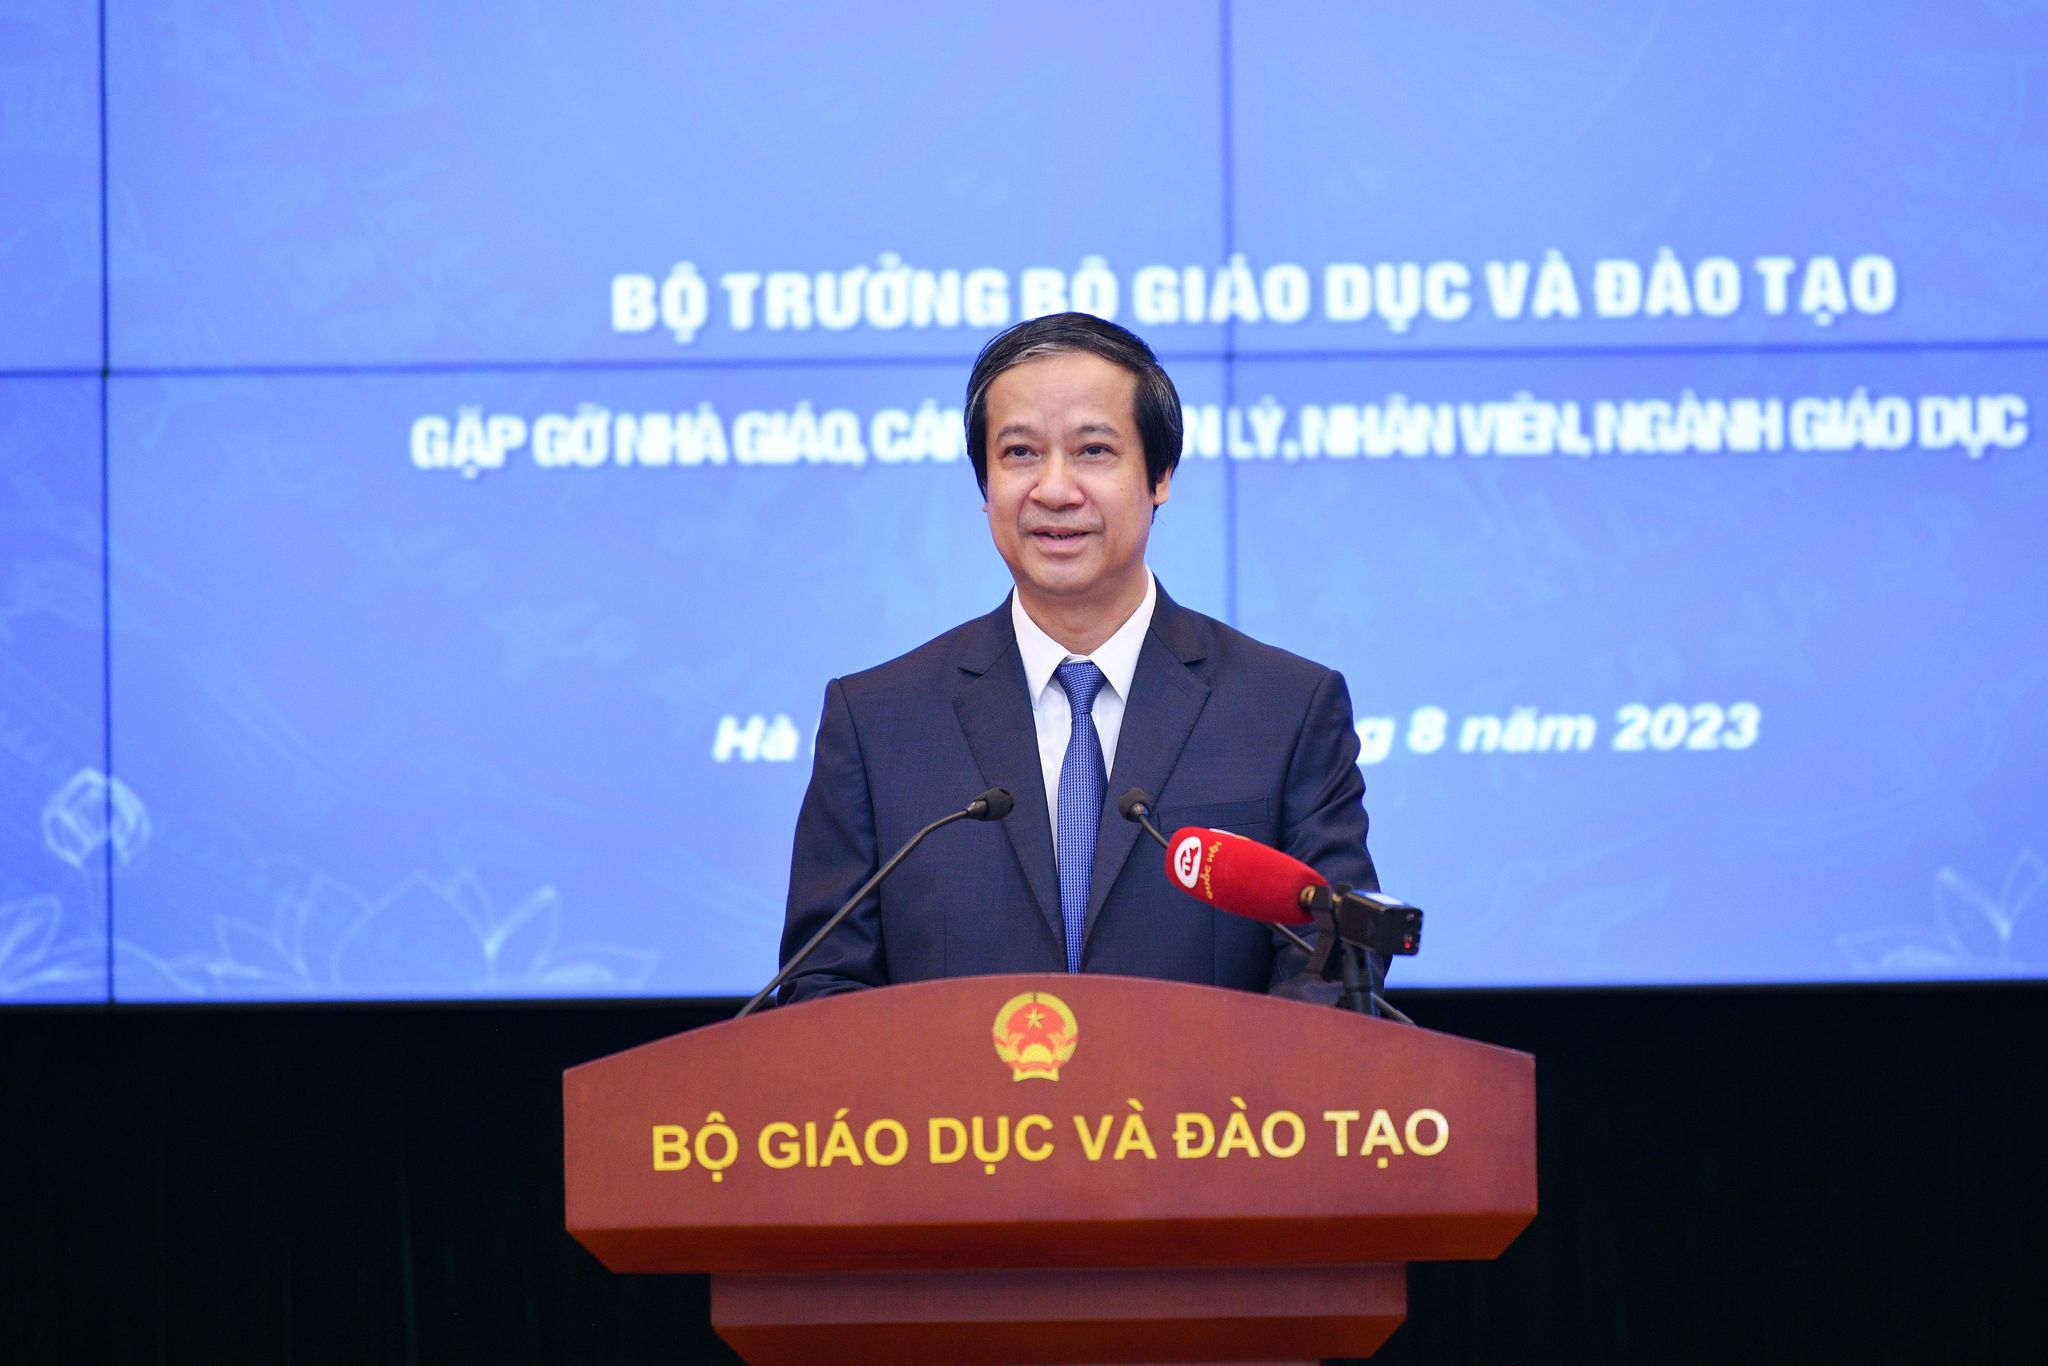 Bộ trưởng Bộ GD&ĐT Nguyễn Kim Sơn phát biểu tại buổi gặp gỡ giáo viên, cán bộ quản lý, nhân viên bậc mầm non, phổ thông, giáo dục thường xuyên.